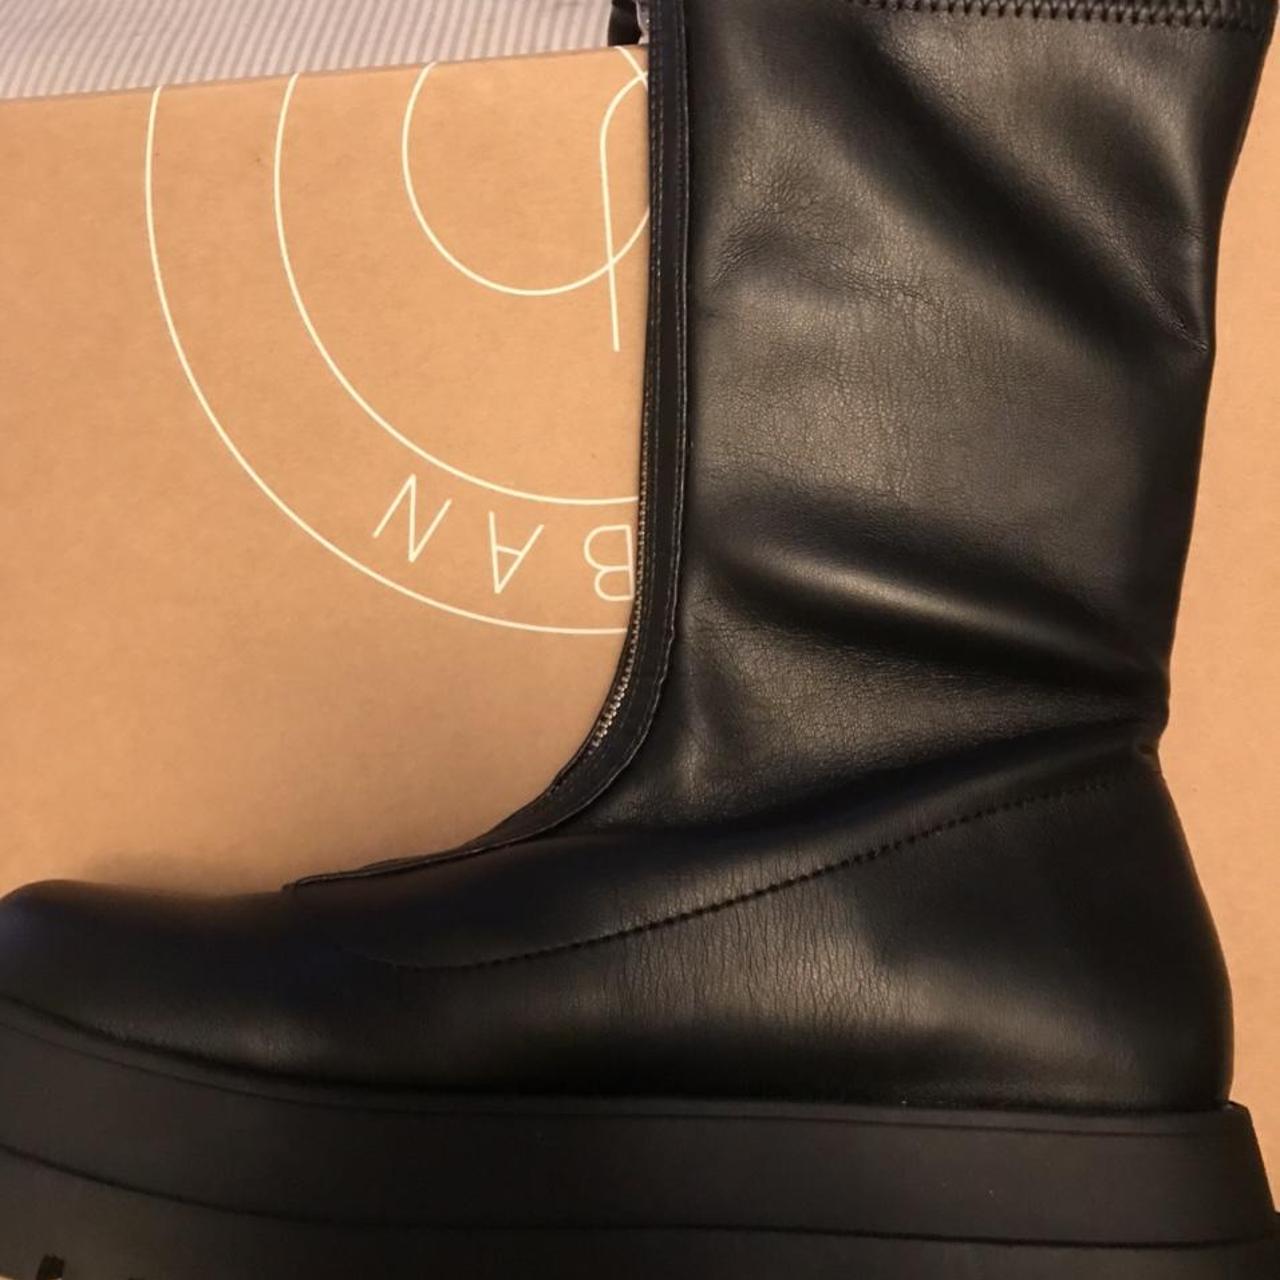 black zola zip up boots. never been worn before - Depop